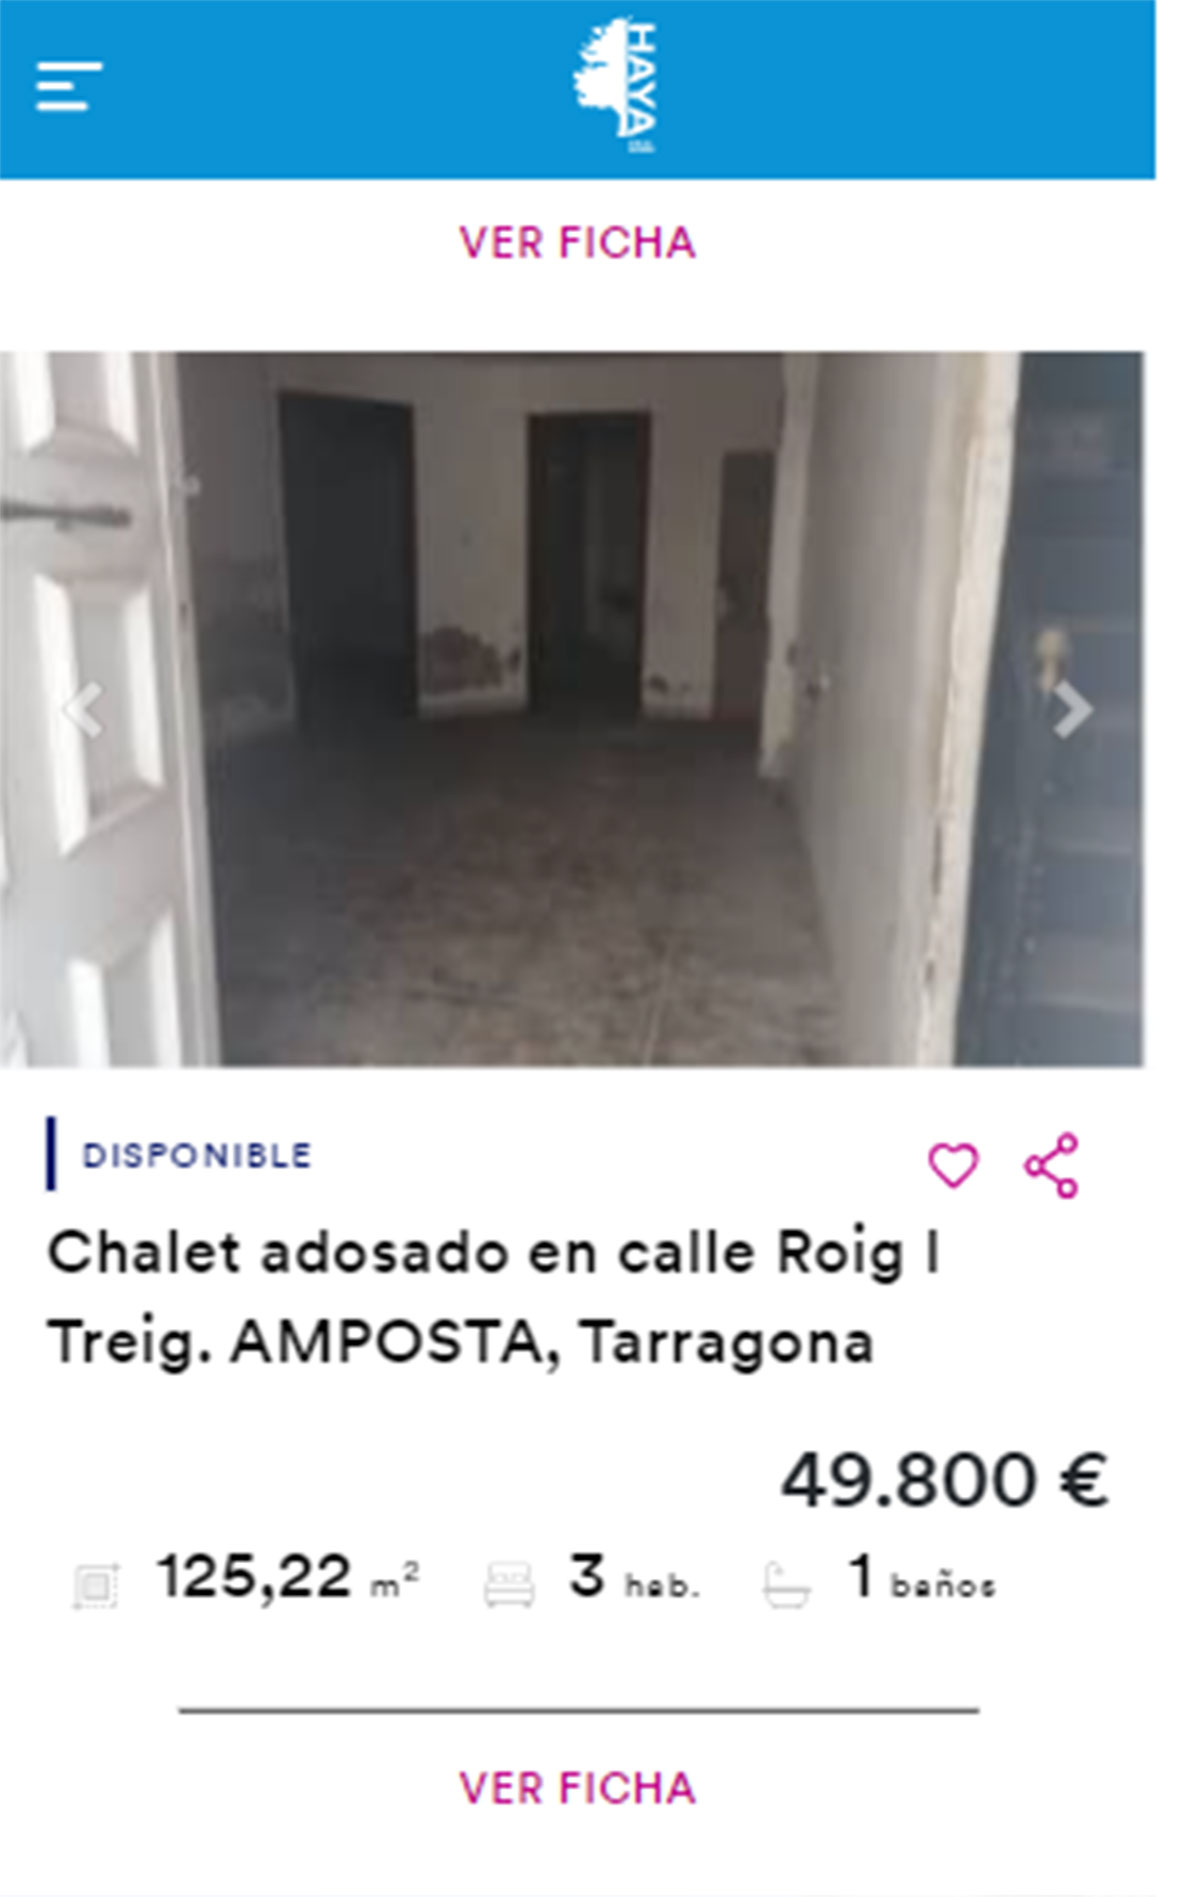 Chalet adosado en venta por 49.000 euros